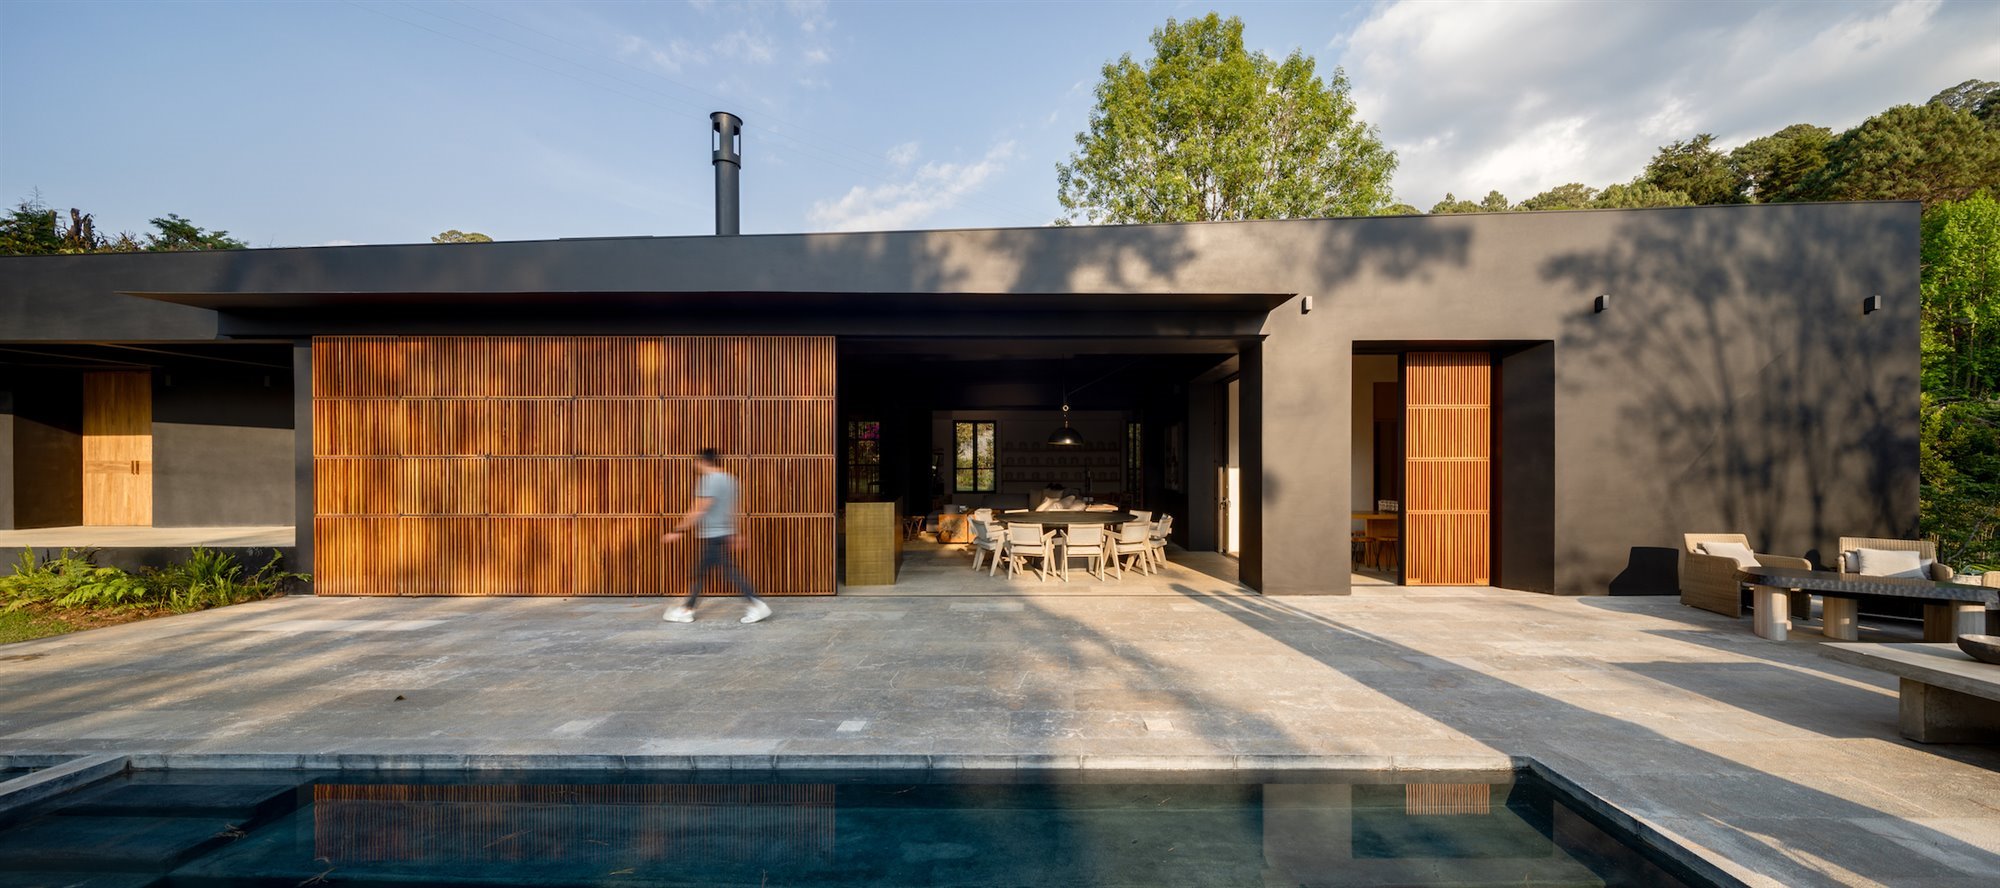 Casa con fachada de color negro y pared de madera tipo celosia